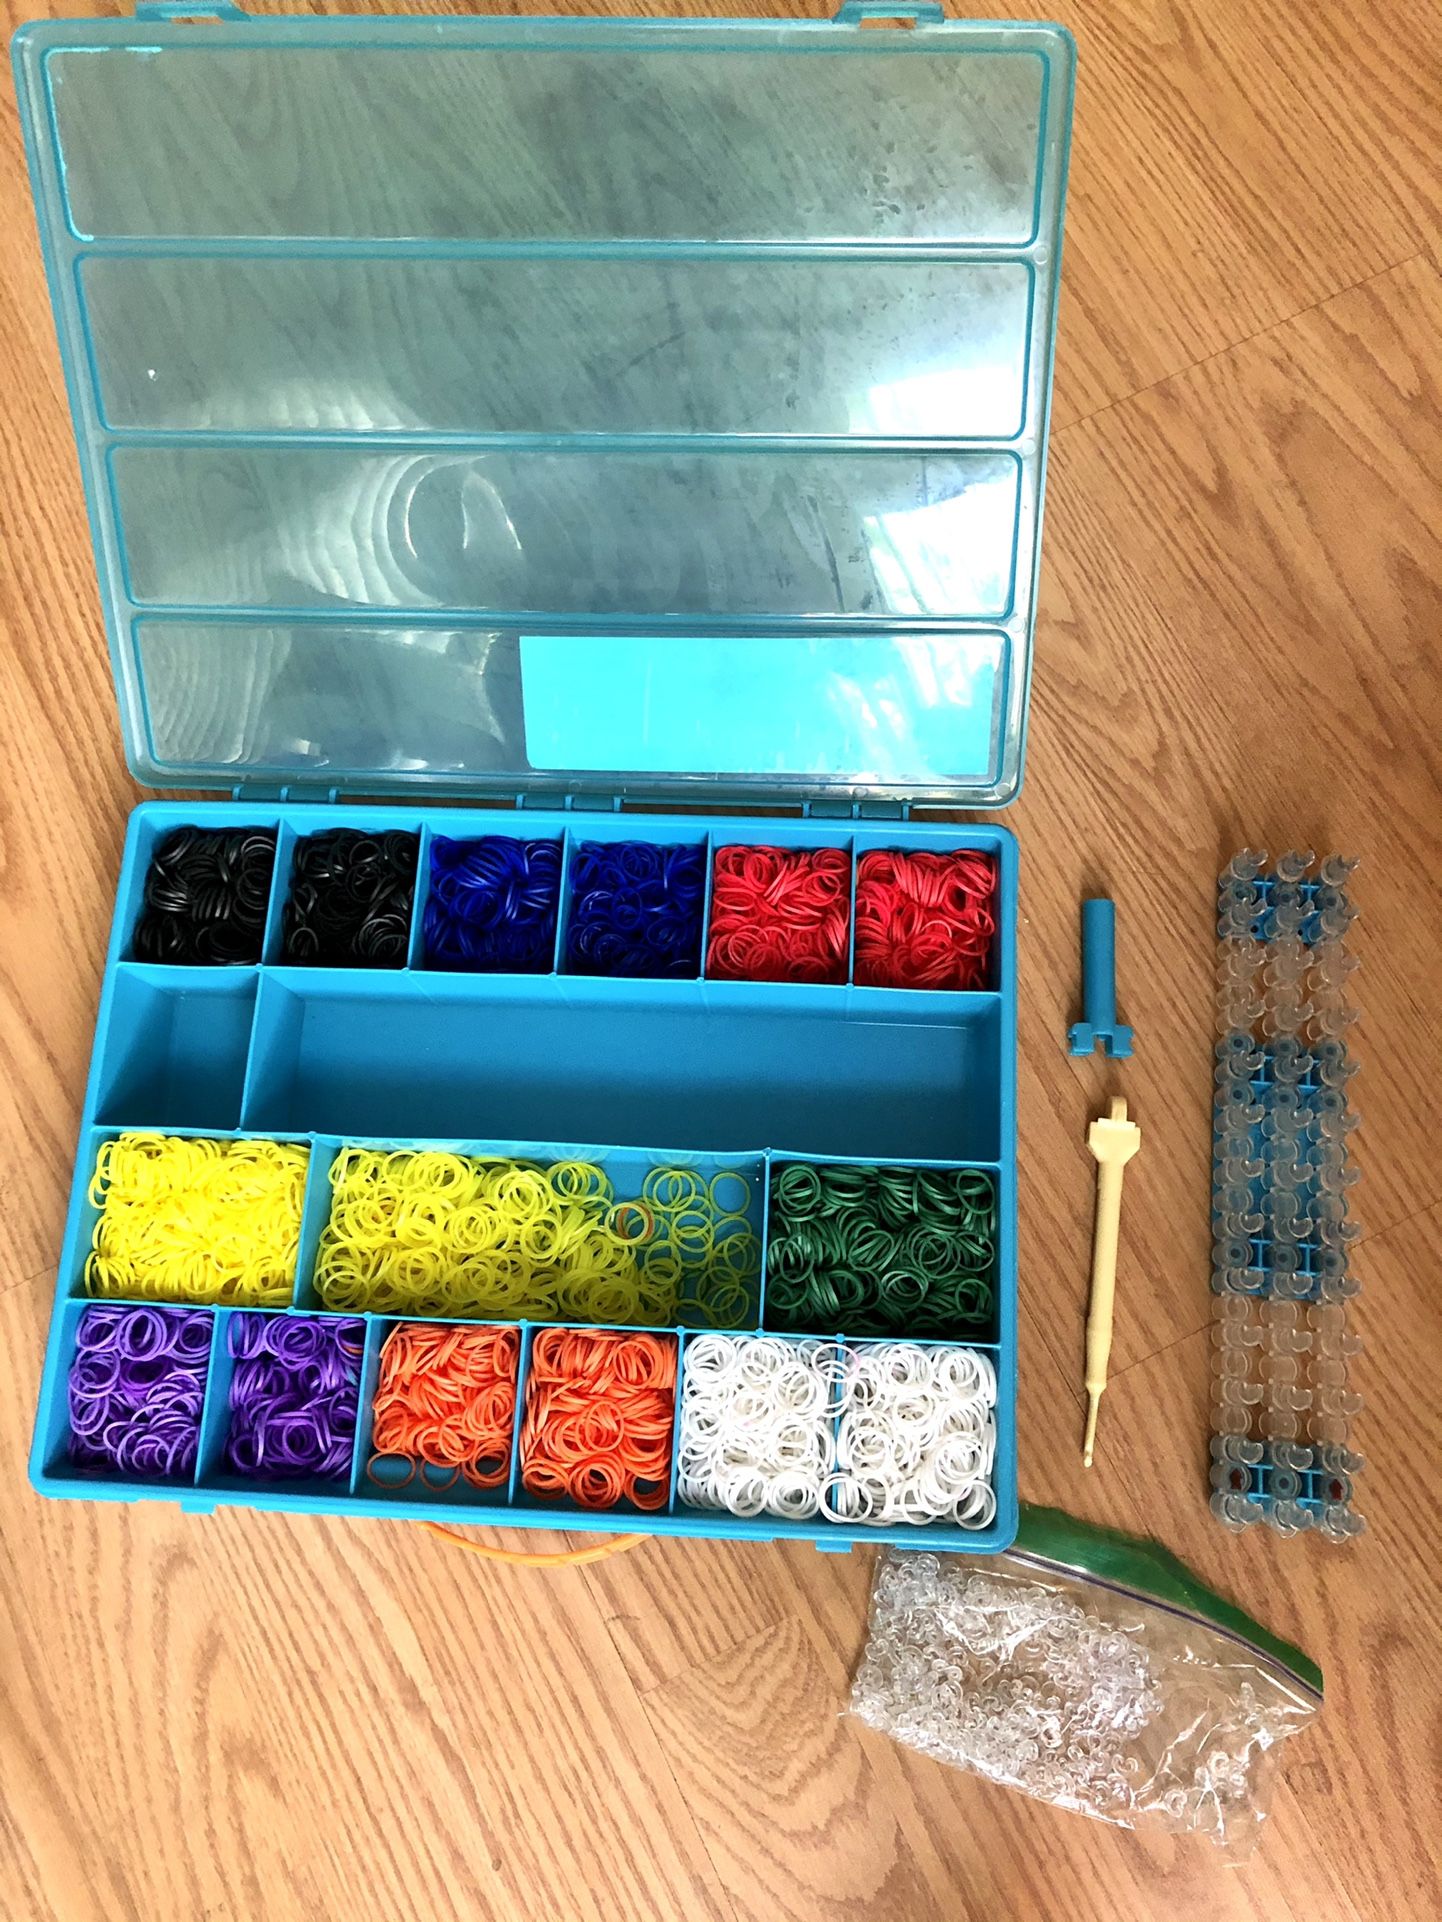 Rainbow loom 🌈 Ready For creativity